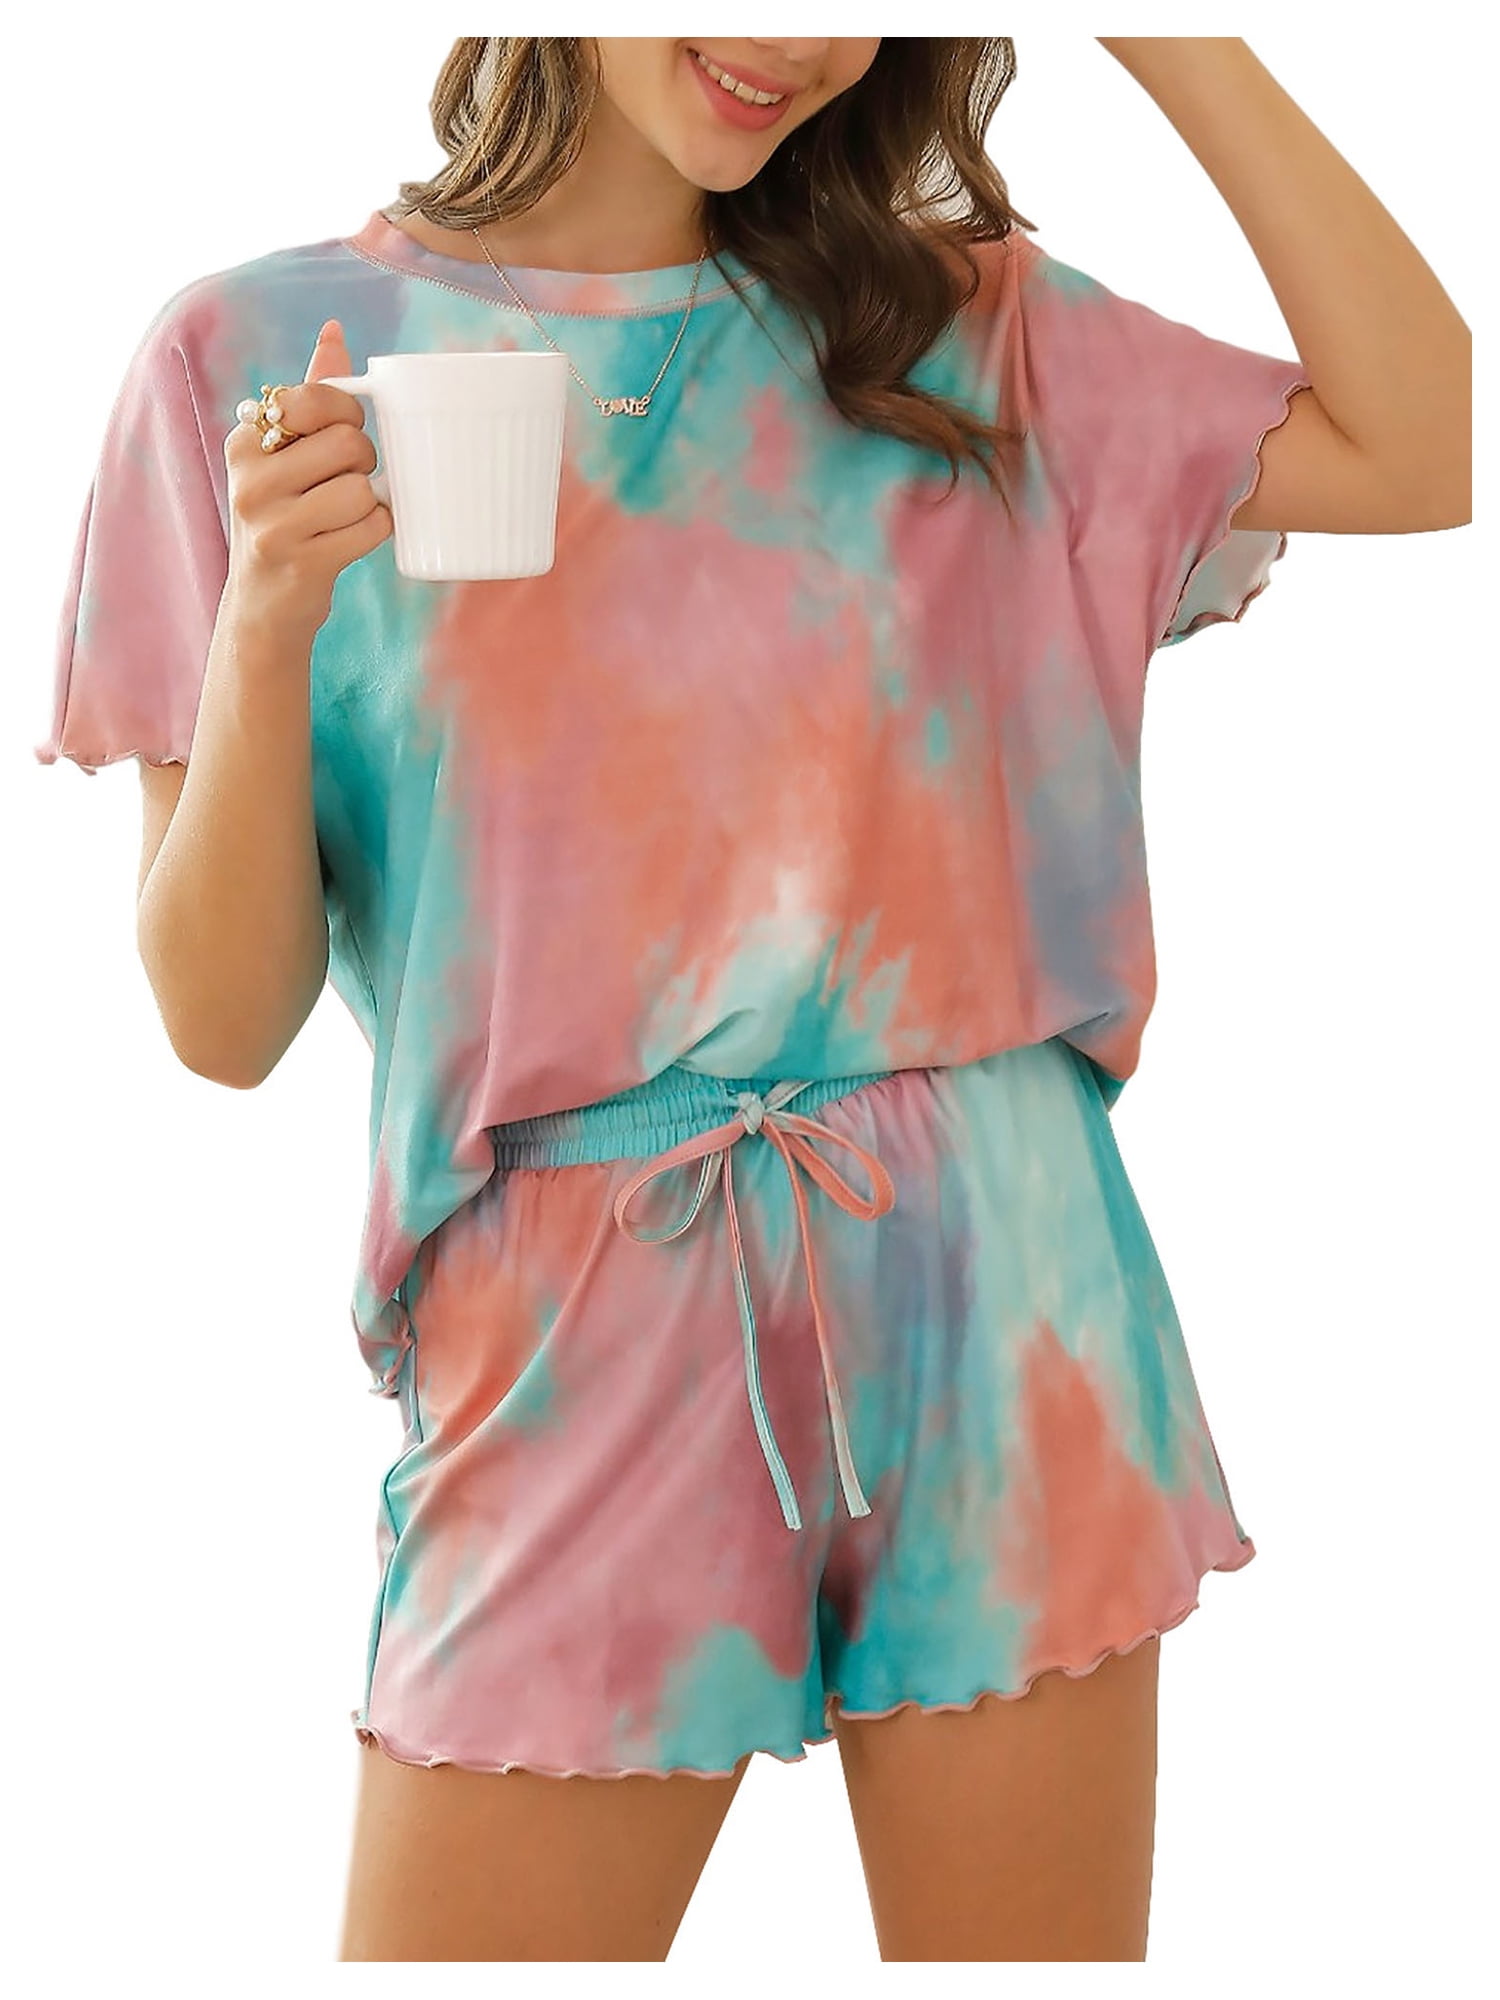 Zecilbo Women's 2 Piece Pajama Set Tie Dye Summer Short Sleeve Sleepwear Drawstring Shorts Pj Set Nightwear Loungewear 